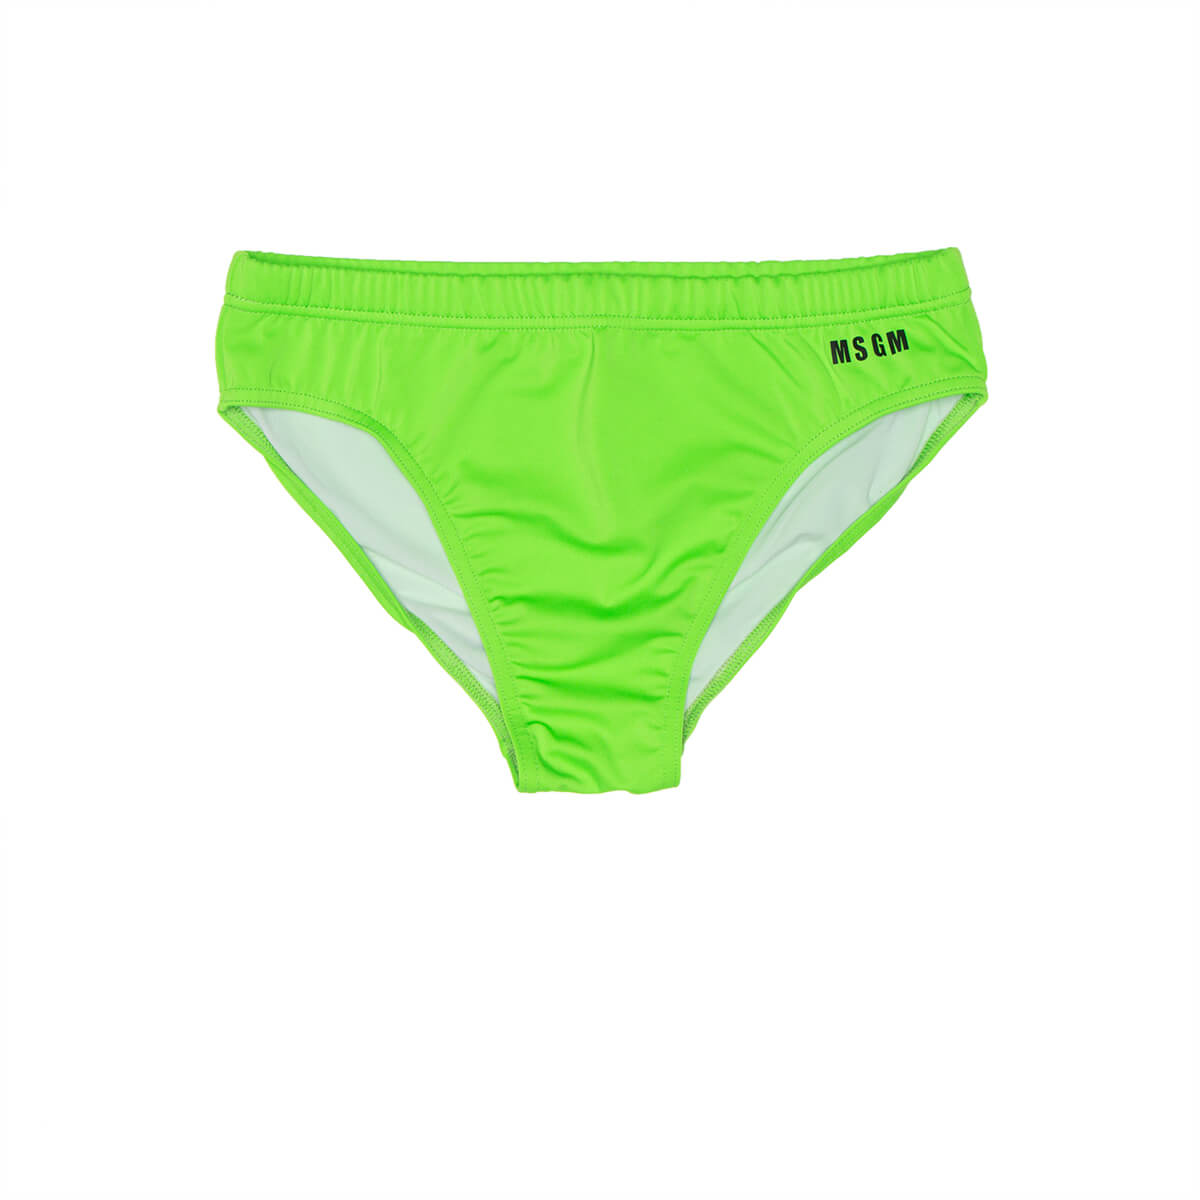 MSGM Green swimwear